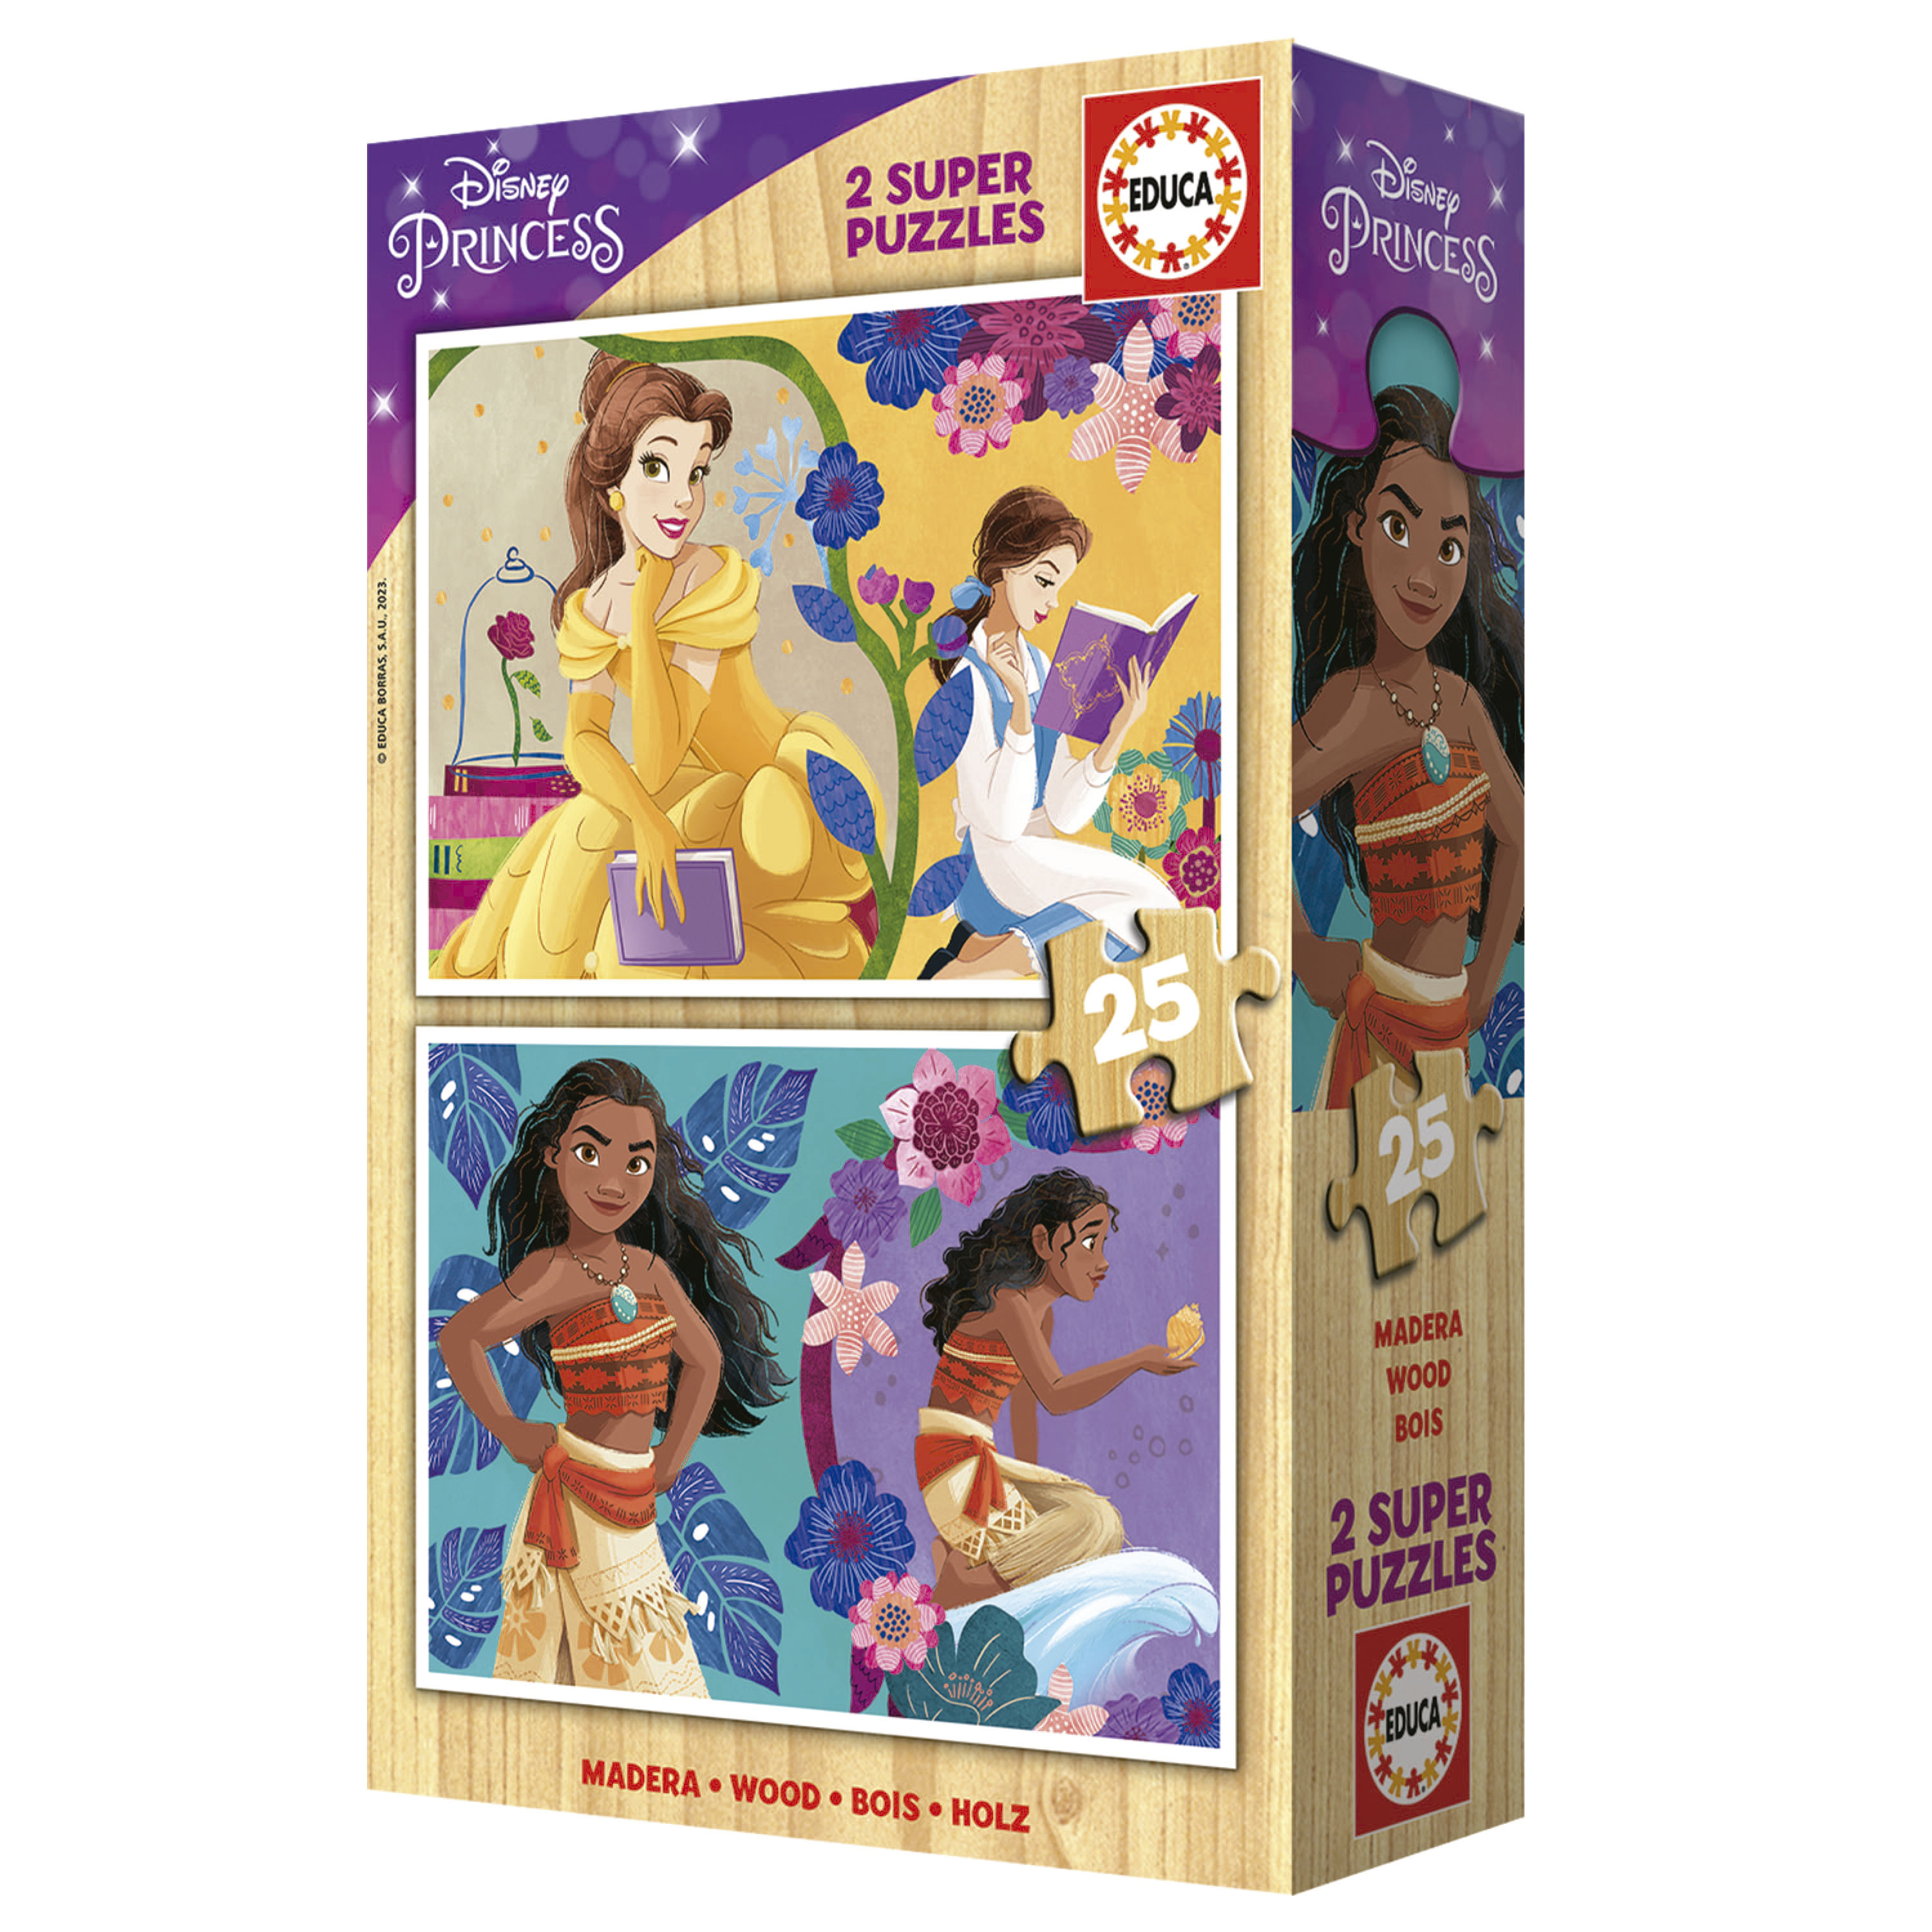 Superpack 4 in 1 Disney Princess - Educa Borras